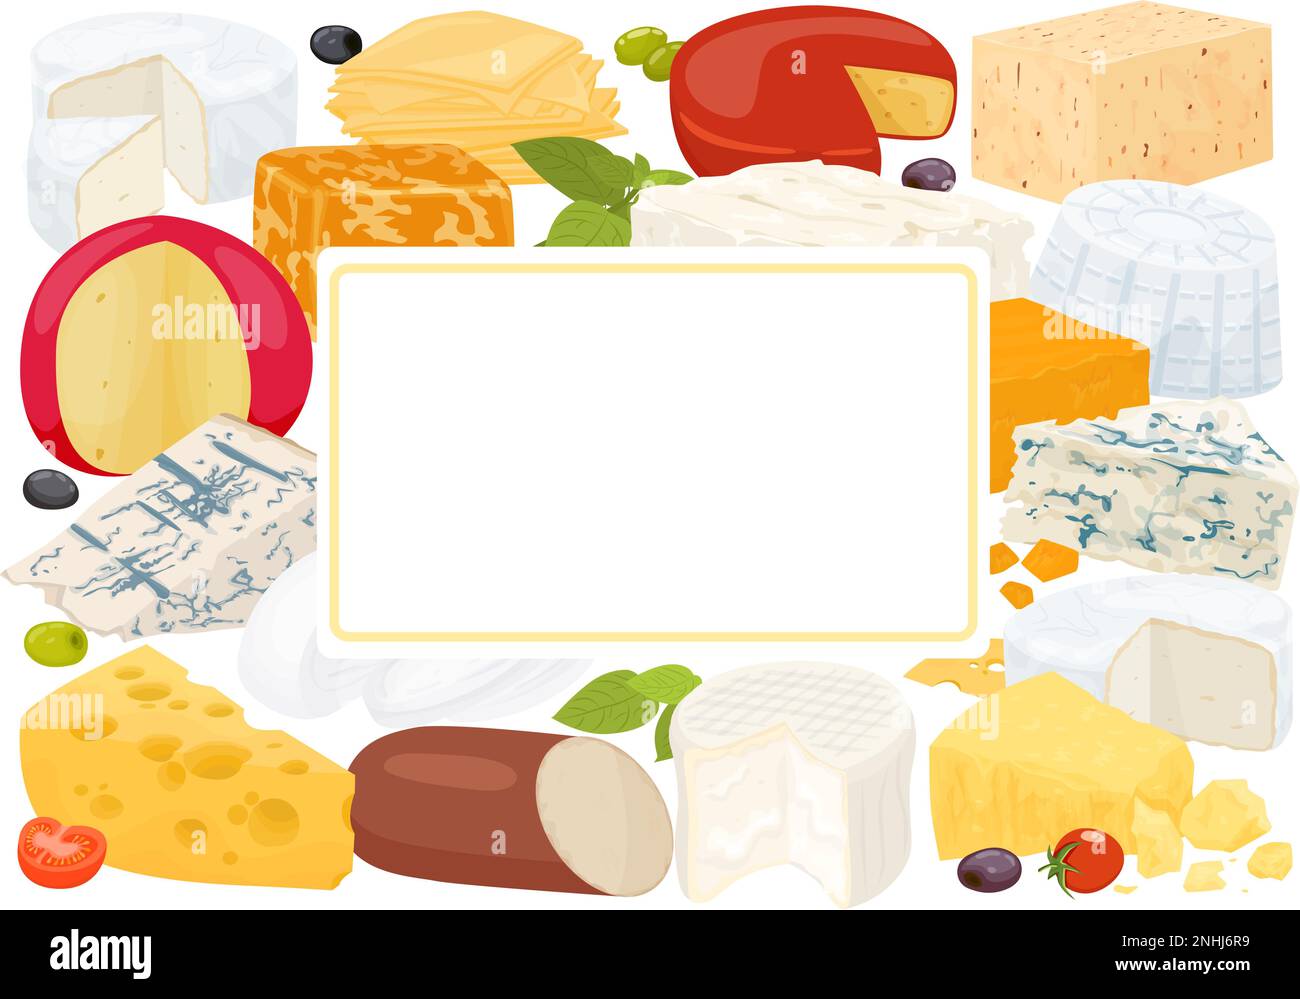 Käse mit flacher Zusammensetzung verschiedene Käsesorten und Etikett in der Mitte und zur Darstellung des Textvektors an Ort und Stelle Stock Vektor